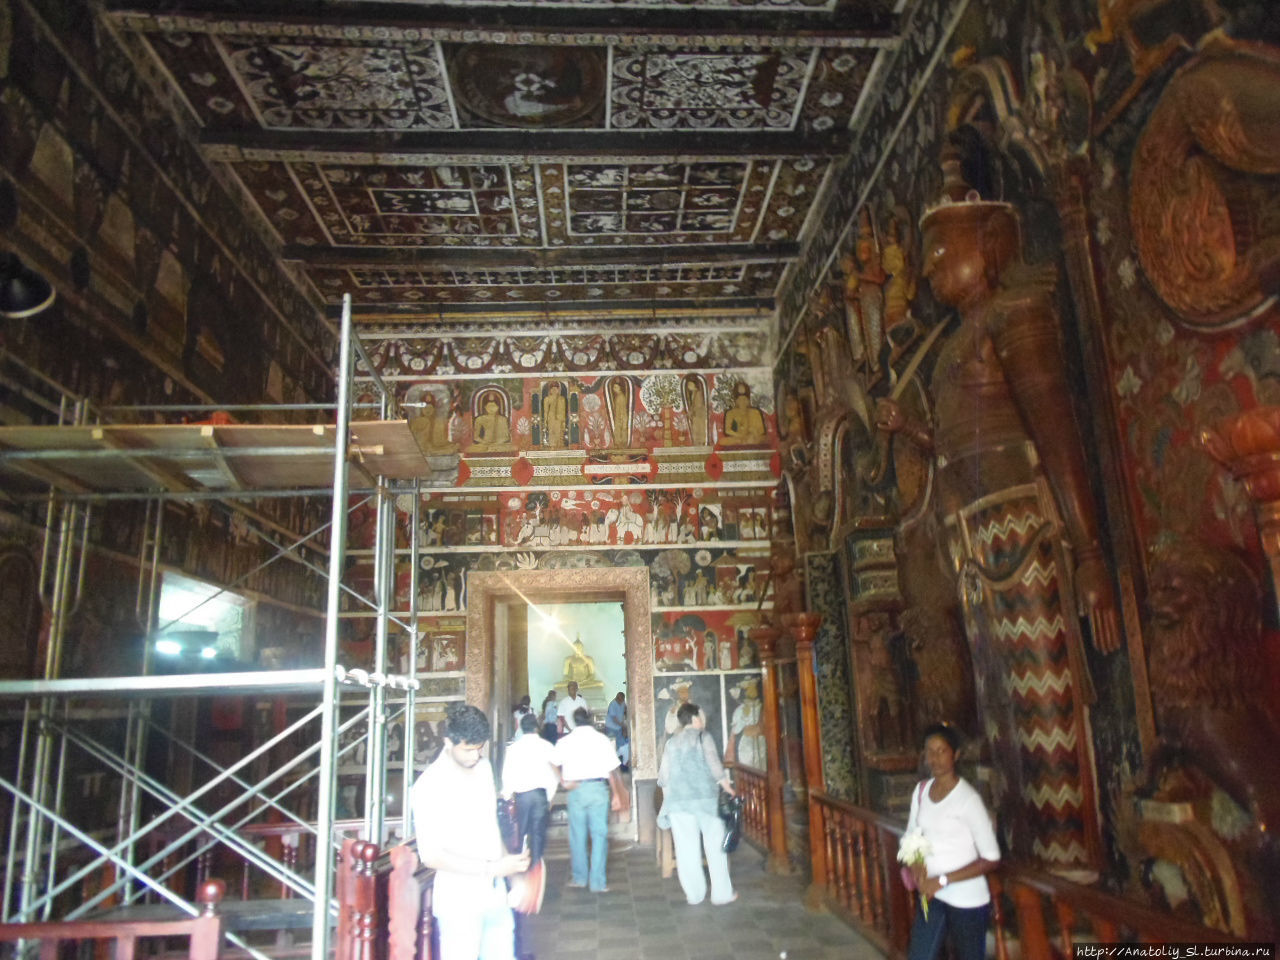 Но конечно самое интересное и потрясающее нас встречает внутри самого храма. Внутри храма следуют огромные залы, на стенах и потолках которых изображена в картинах история возникновения святилища и сценки из жизни Будды. Келания, Шри-Ланка